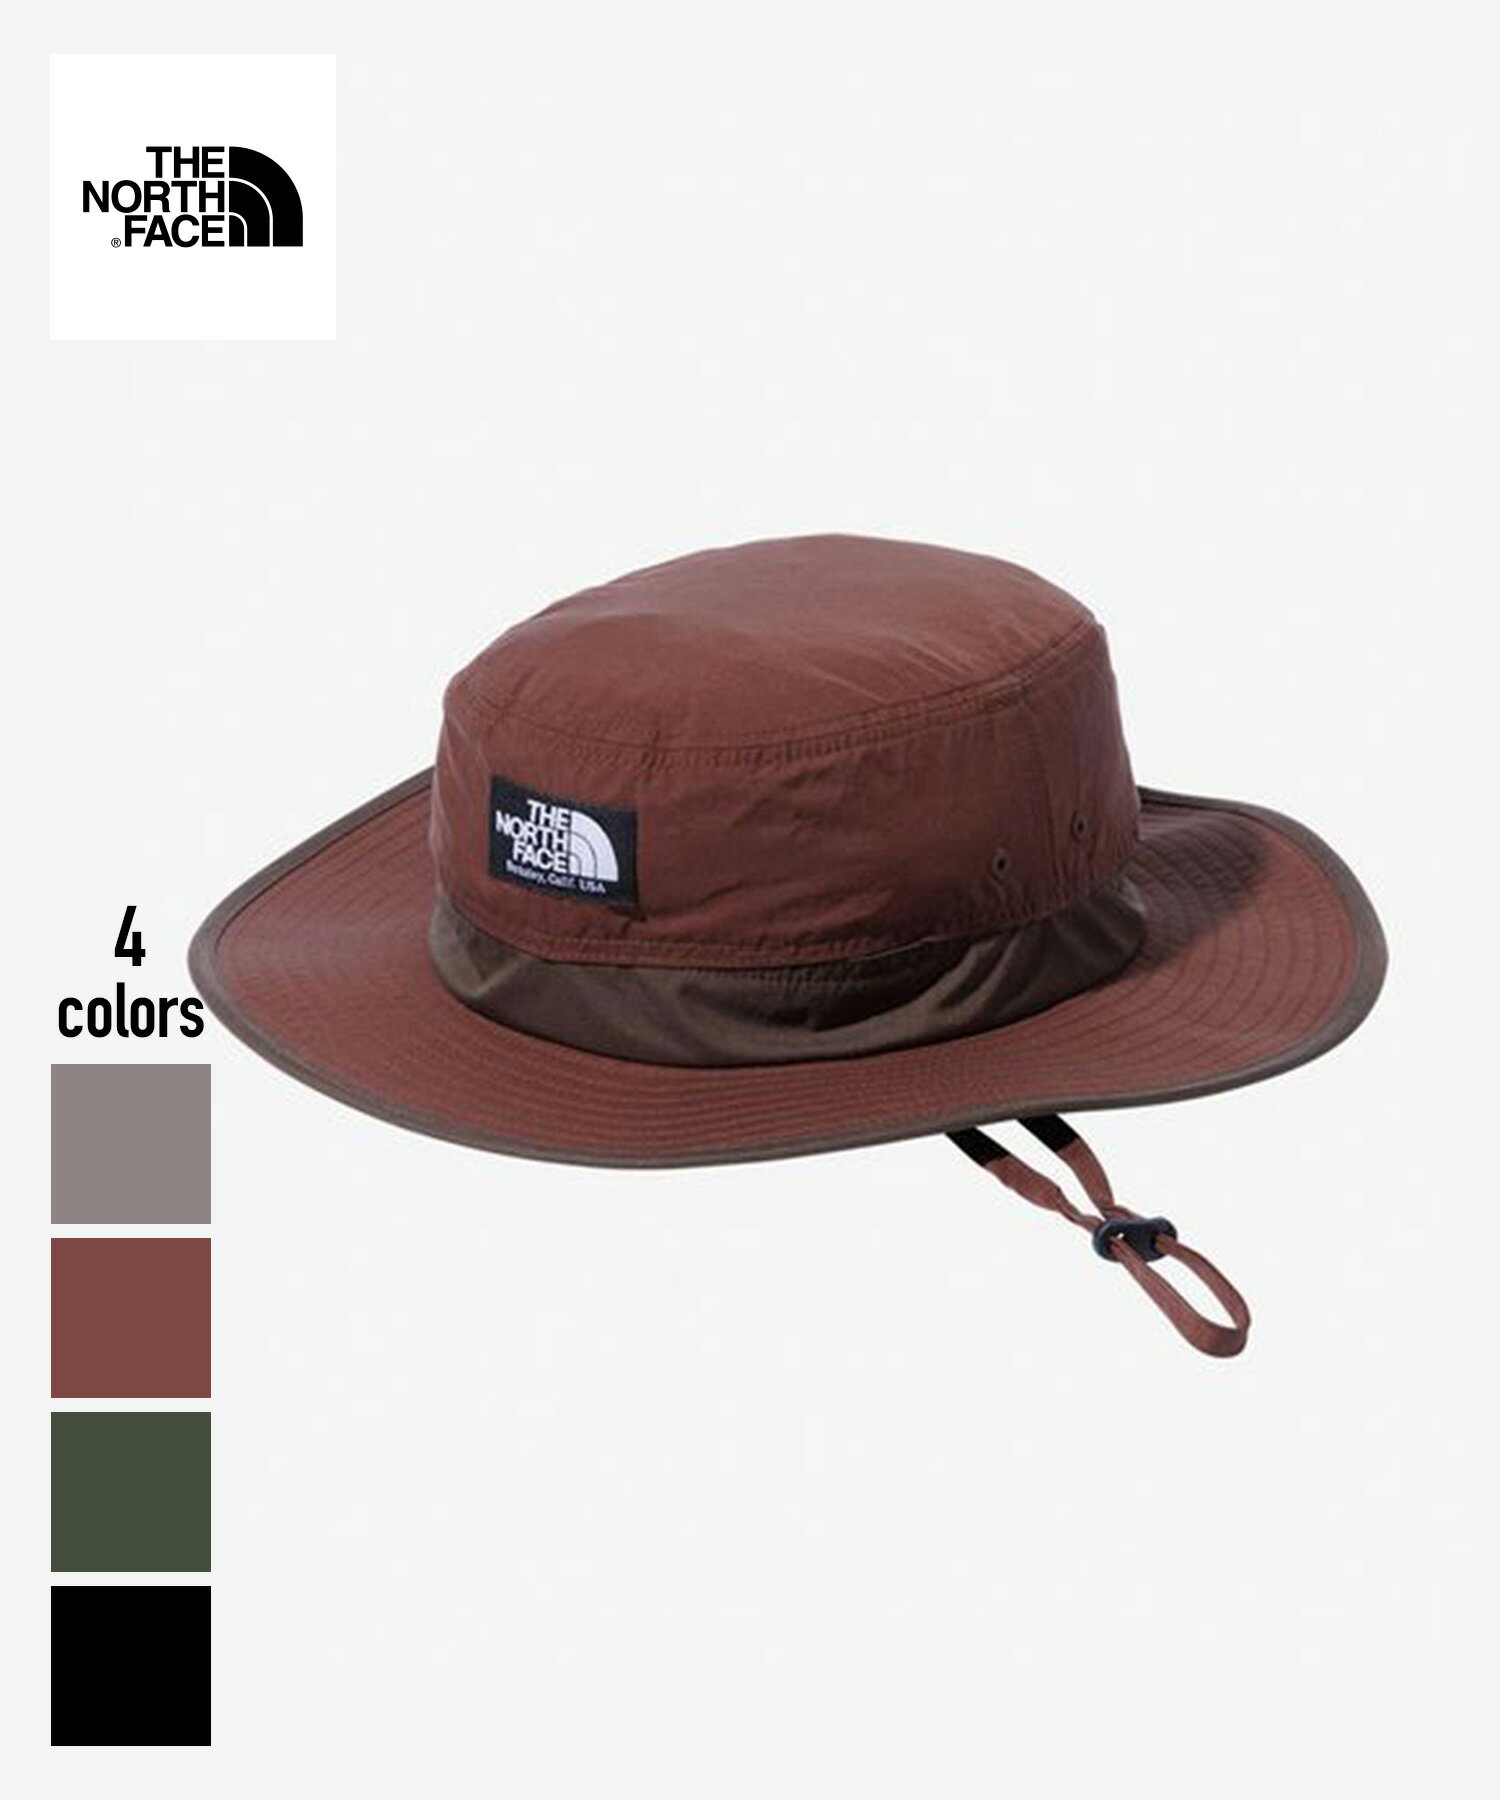 THE NORTHFACE Horizon Hat(NN02336)正規品 帽子 ヘッドウェア アウトドア バーベキュー 紫外線対策 日よけ UVケア 通気性 ブラック ブラウン オリーブ ライトブラウン M L XL 23FW 23AW 23年秋冬 新作